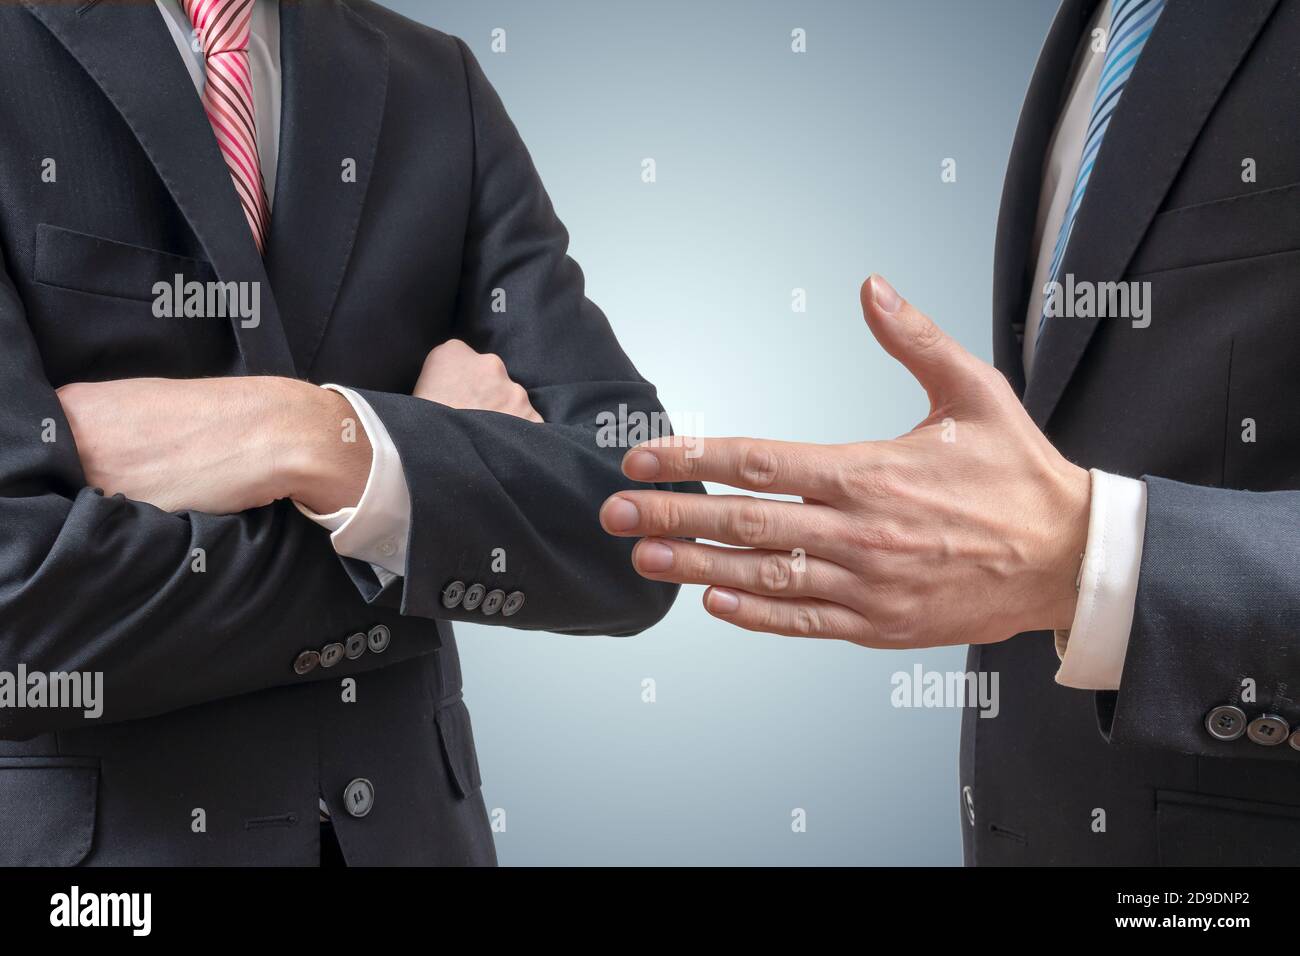 Refuser la poignée de main. L'homme refuse de se serrer la main avec un  homme d'affaires qui lui offre la main Photo Stock - Alamy